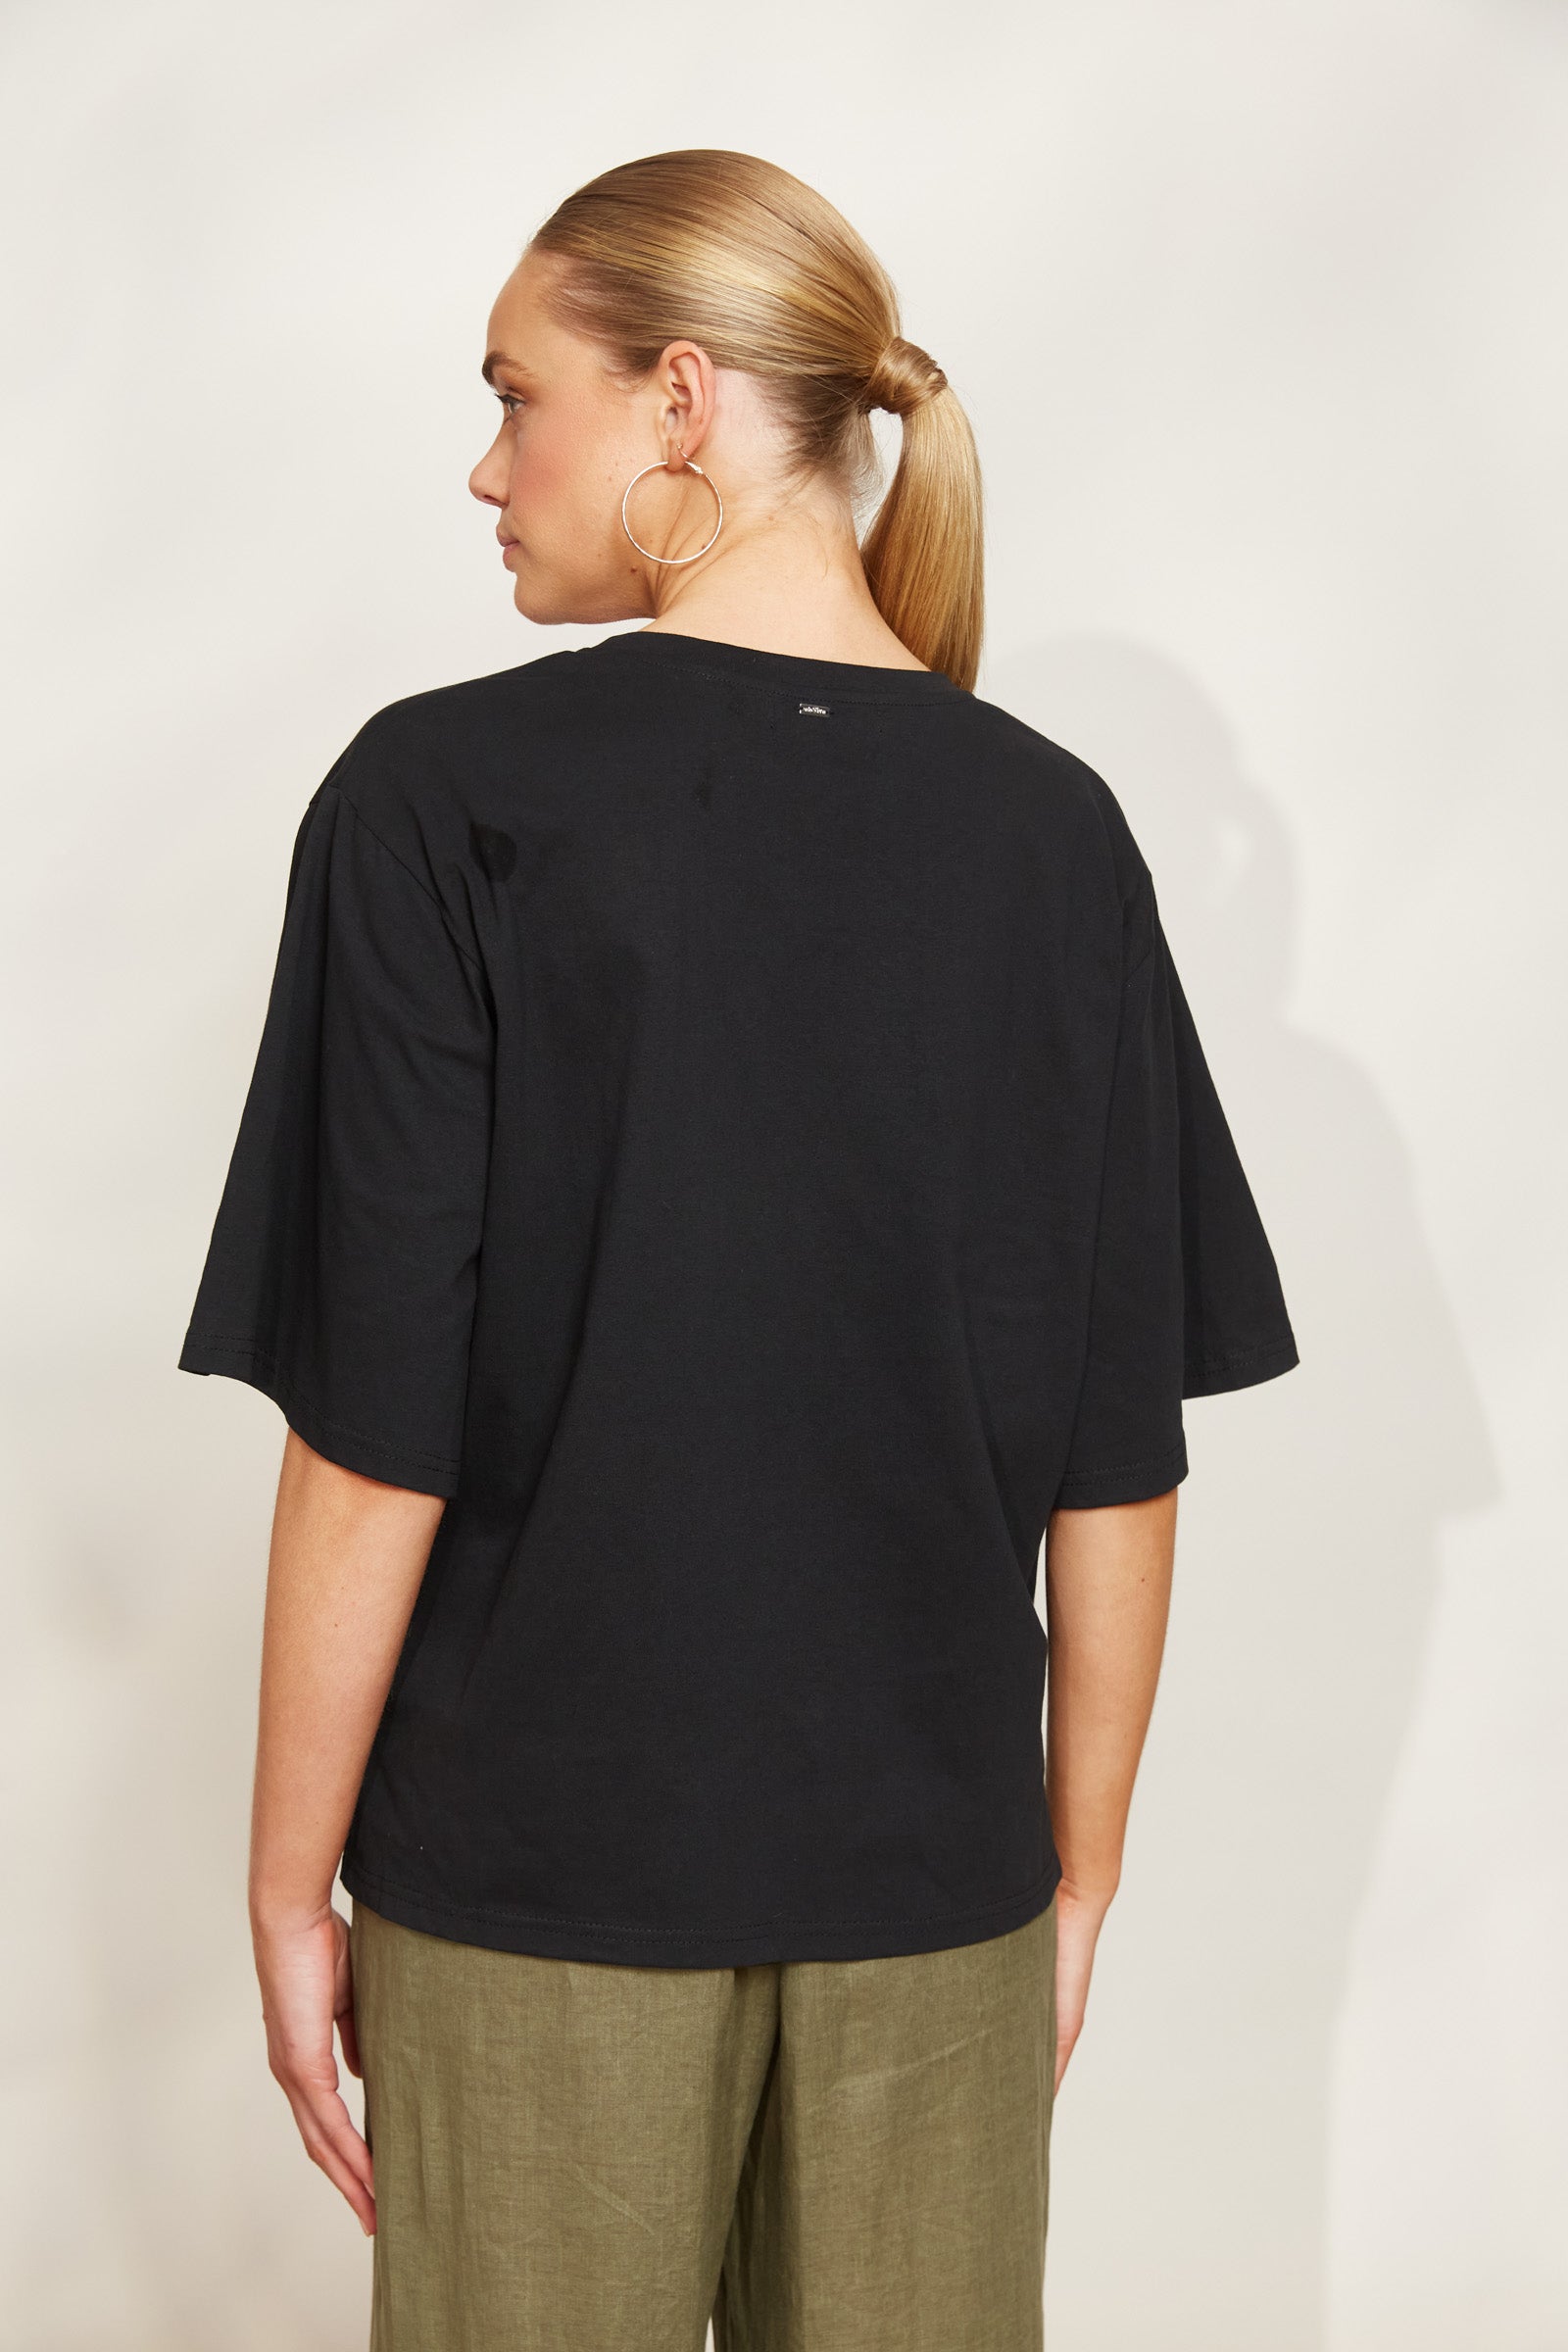 Studio Tshirt - Ebony - eb&ive Clothing - Top Tshirt S/S